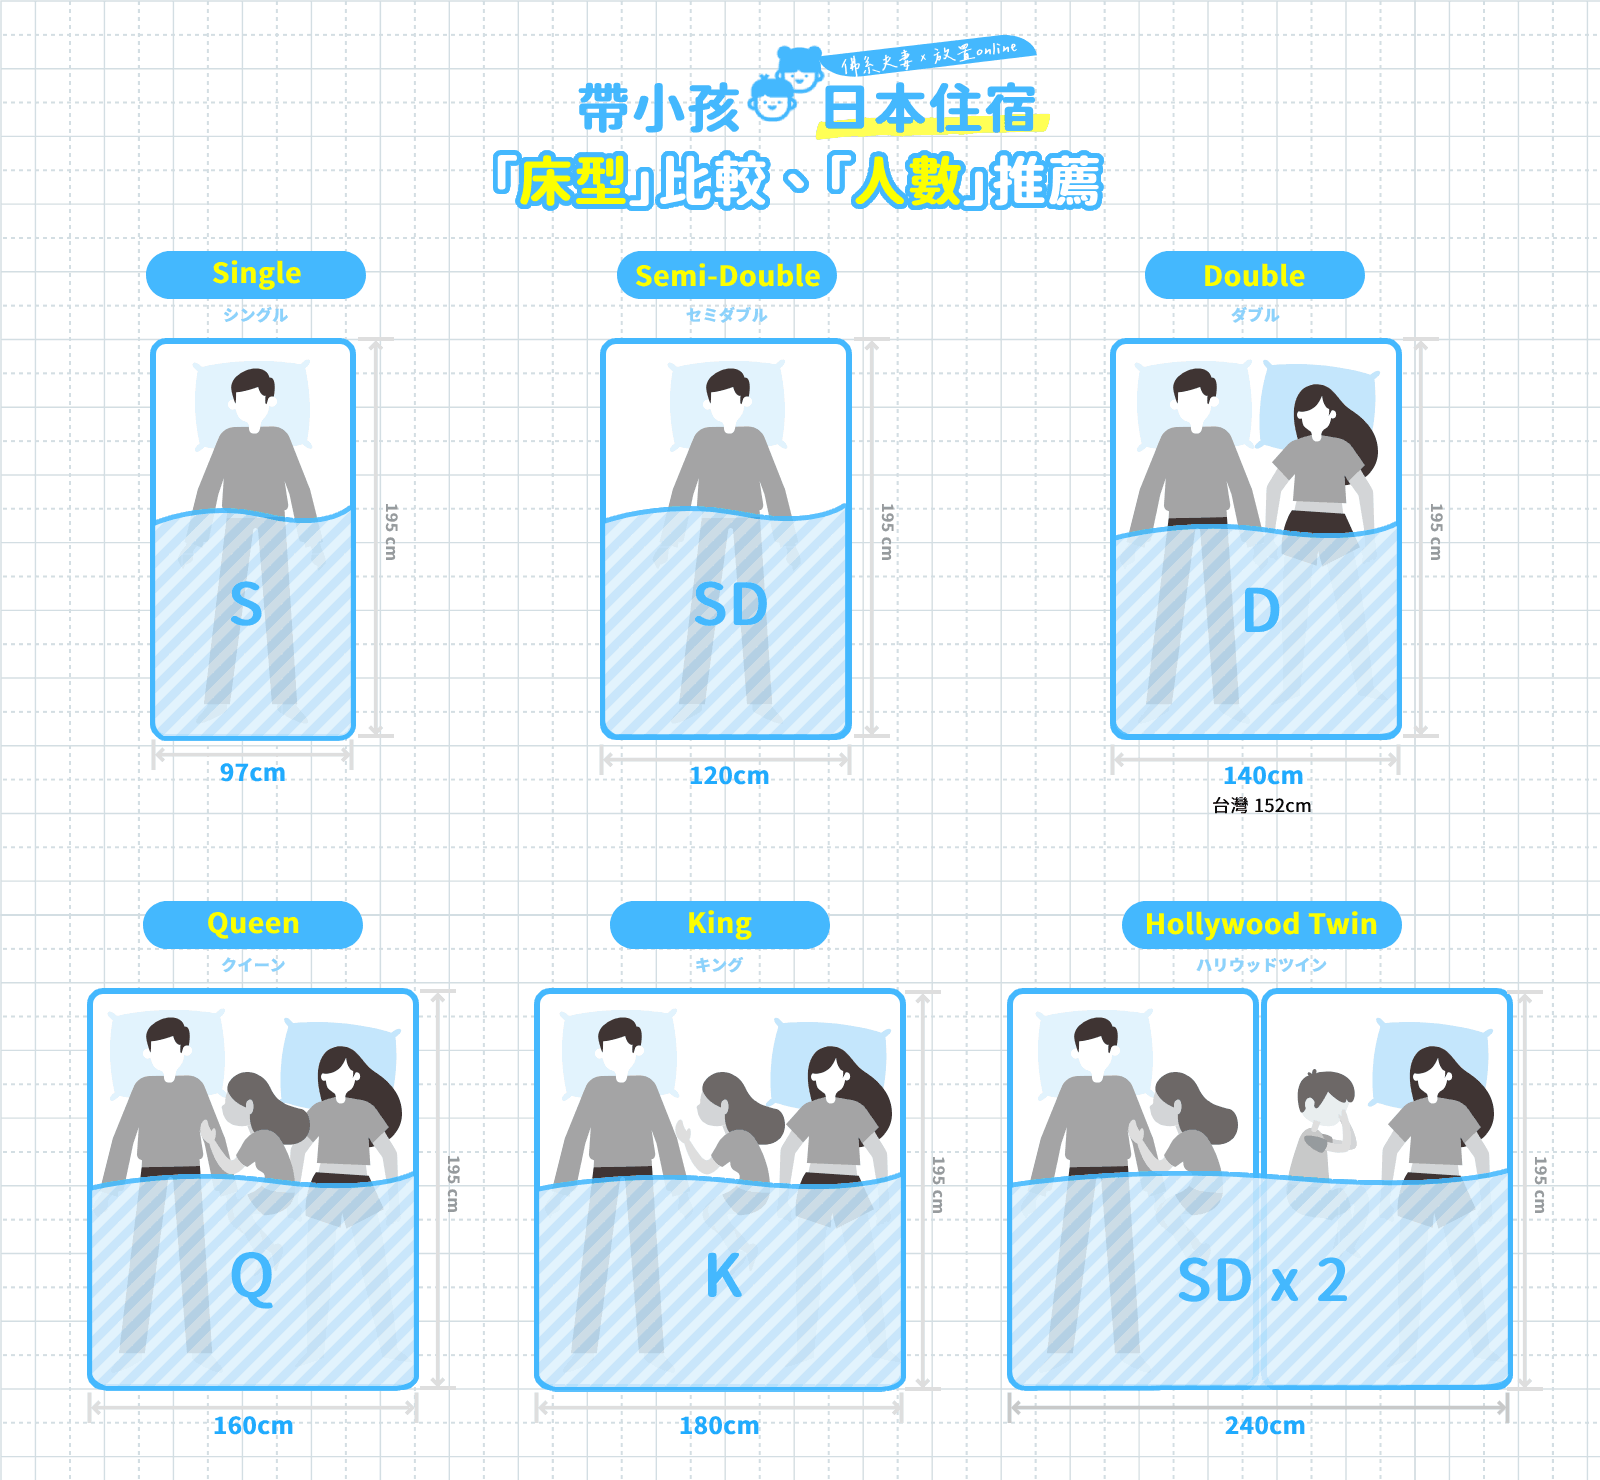 床型比較、人數推薦 - 帶小孩日本住宿